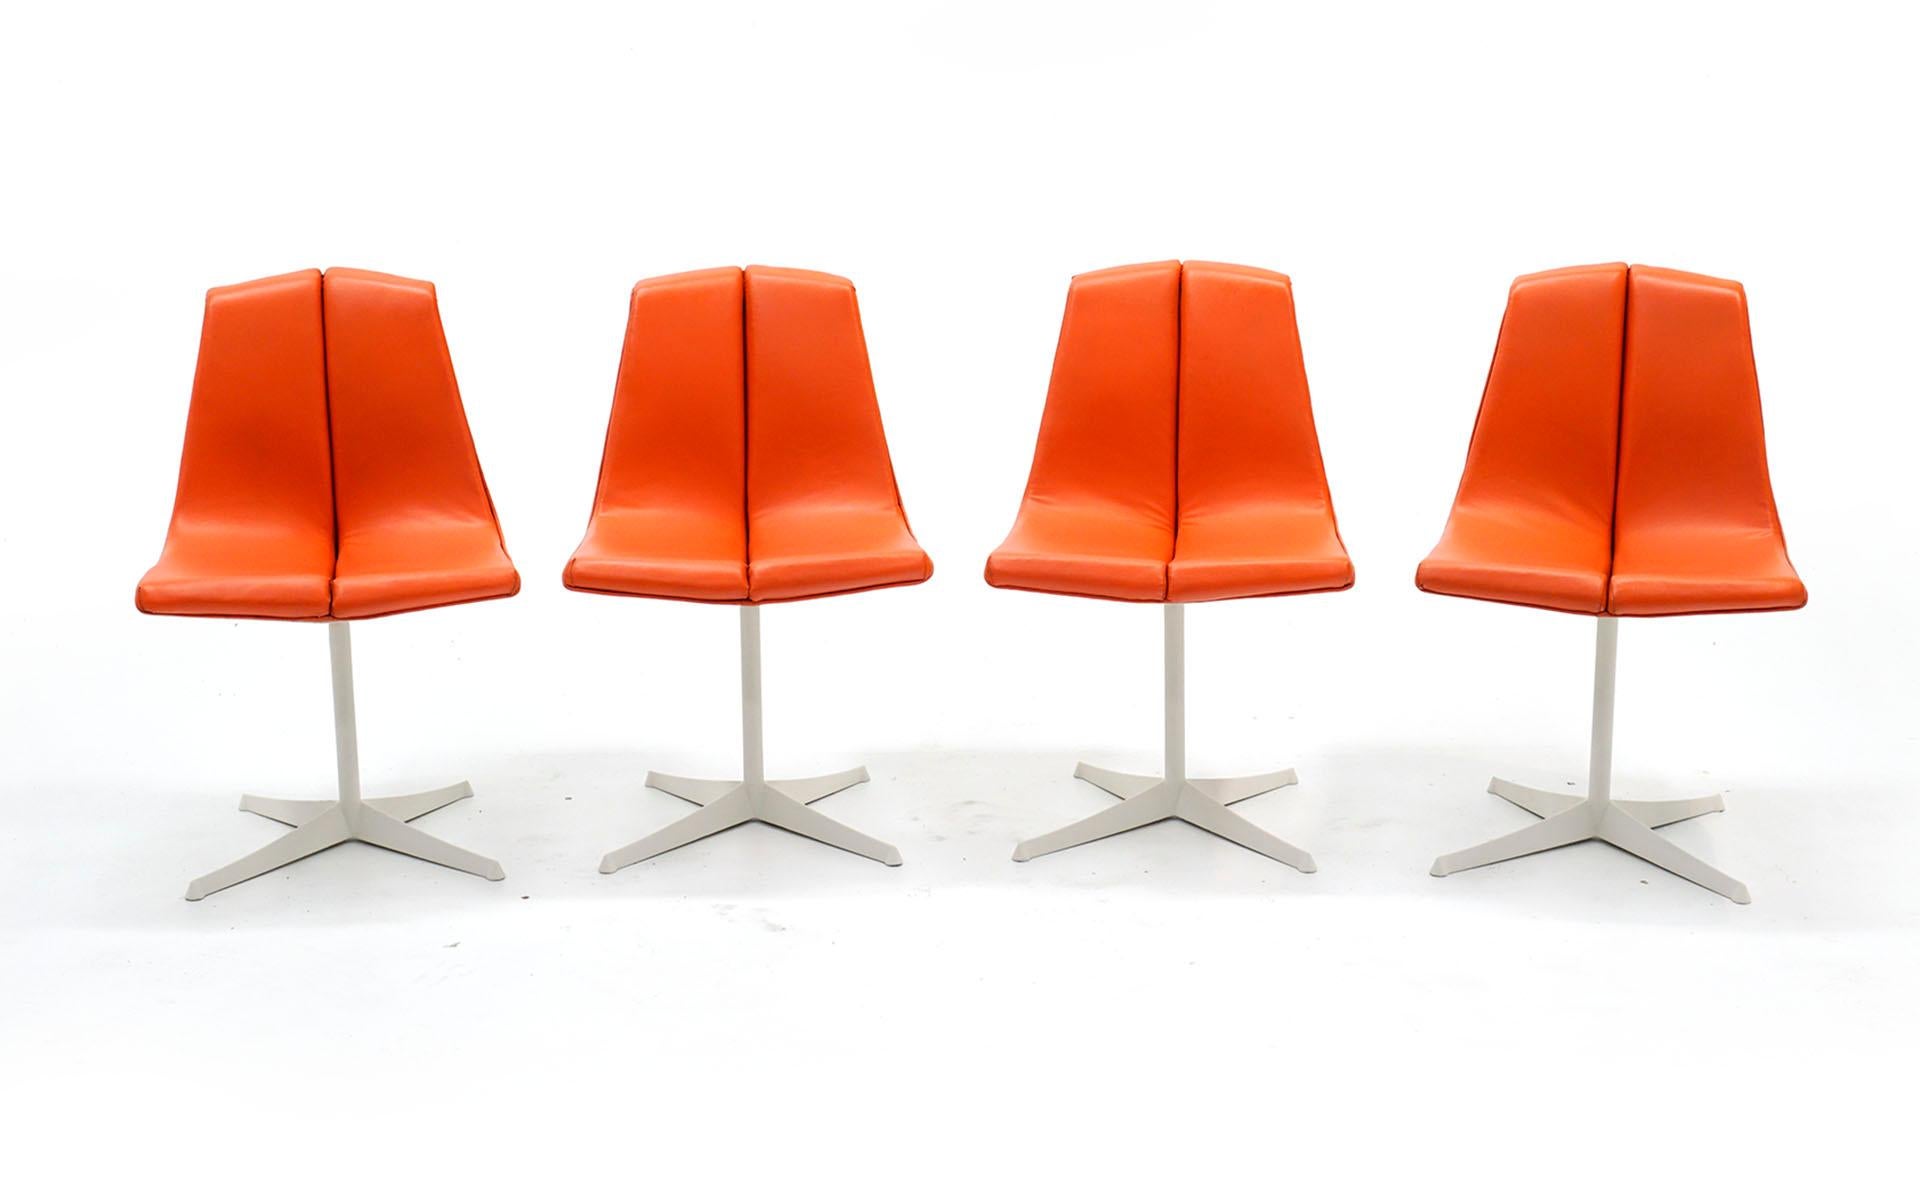 Satz von 8 Richard Schultz Esszimmerstühlen, hergestellt von Knoll, 1960er Jahre. Die Rahmen und Rückenlehnen wurden fachmännisch in einem weichen Weiß / Elfenbein Farbe und die ursprüngliche rote orange Sitze wurden restauriert und sind in